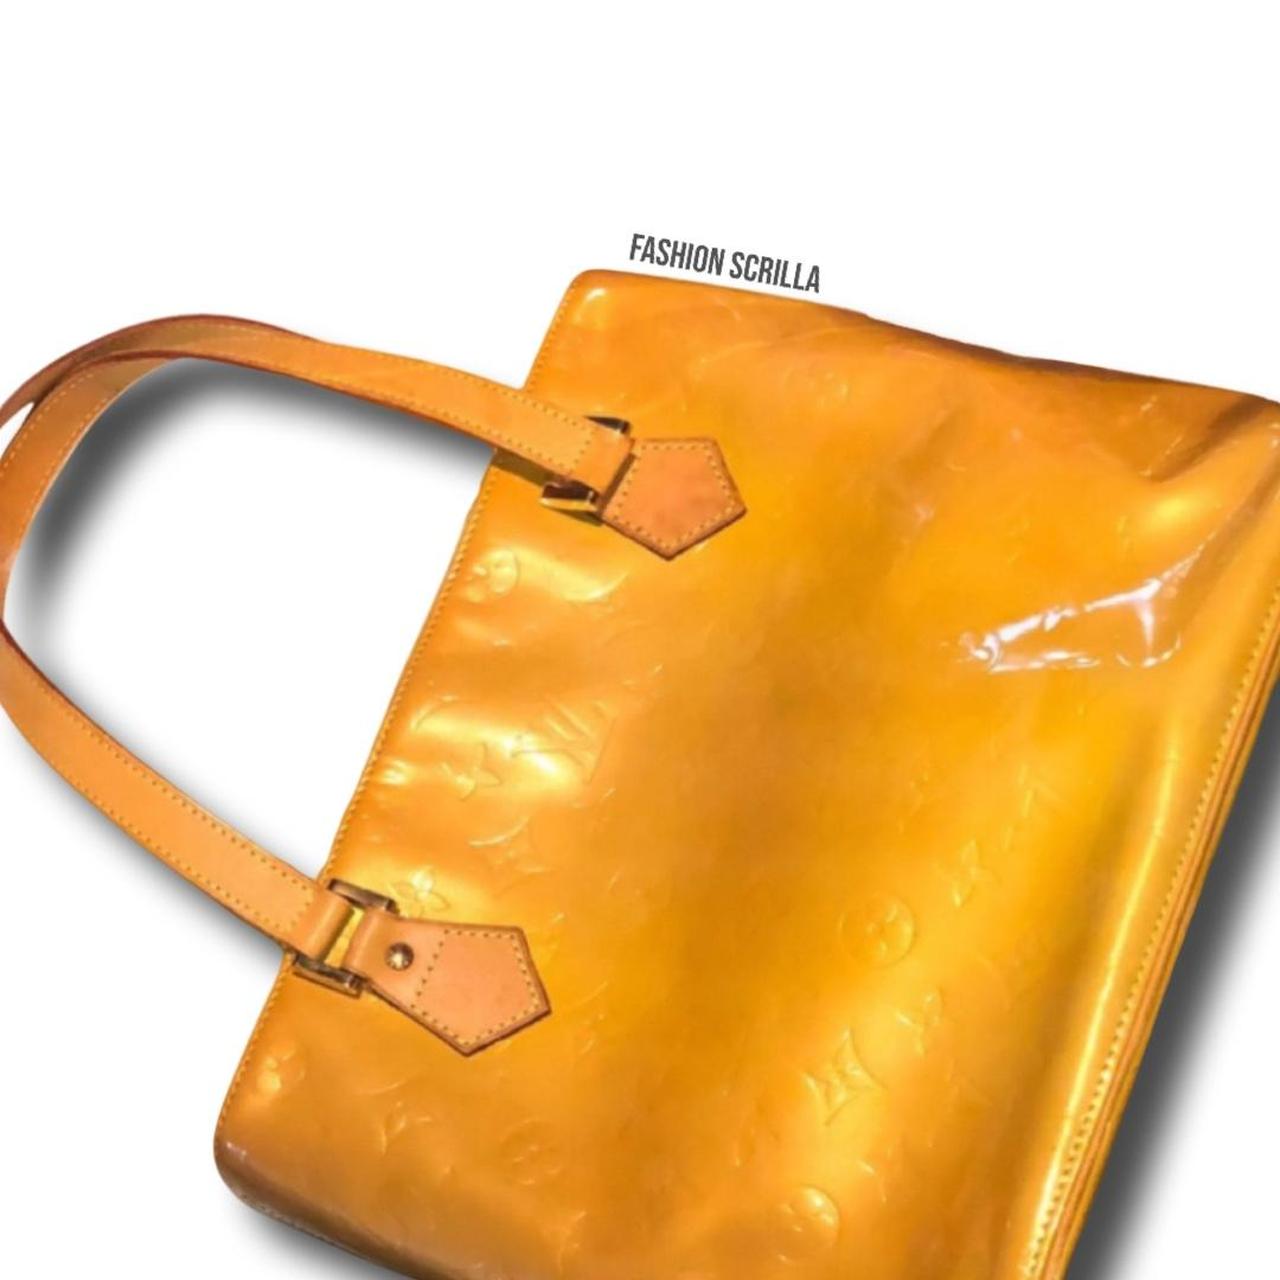 Louis Vuitton Houston Yellow Monogram Patent Leather Tote Bag